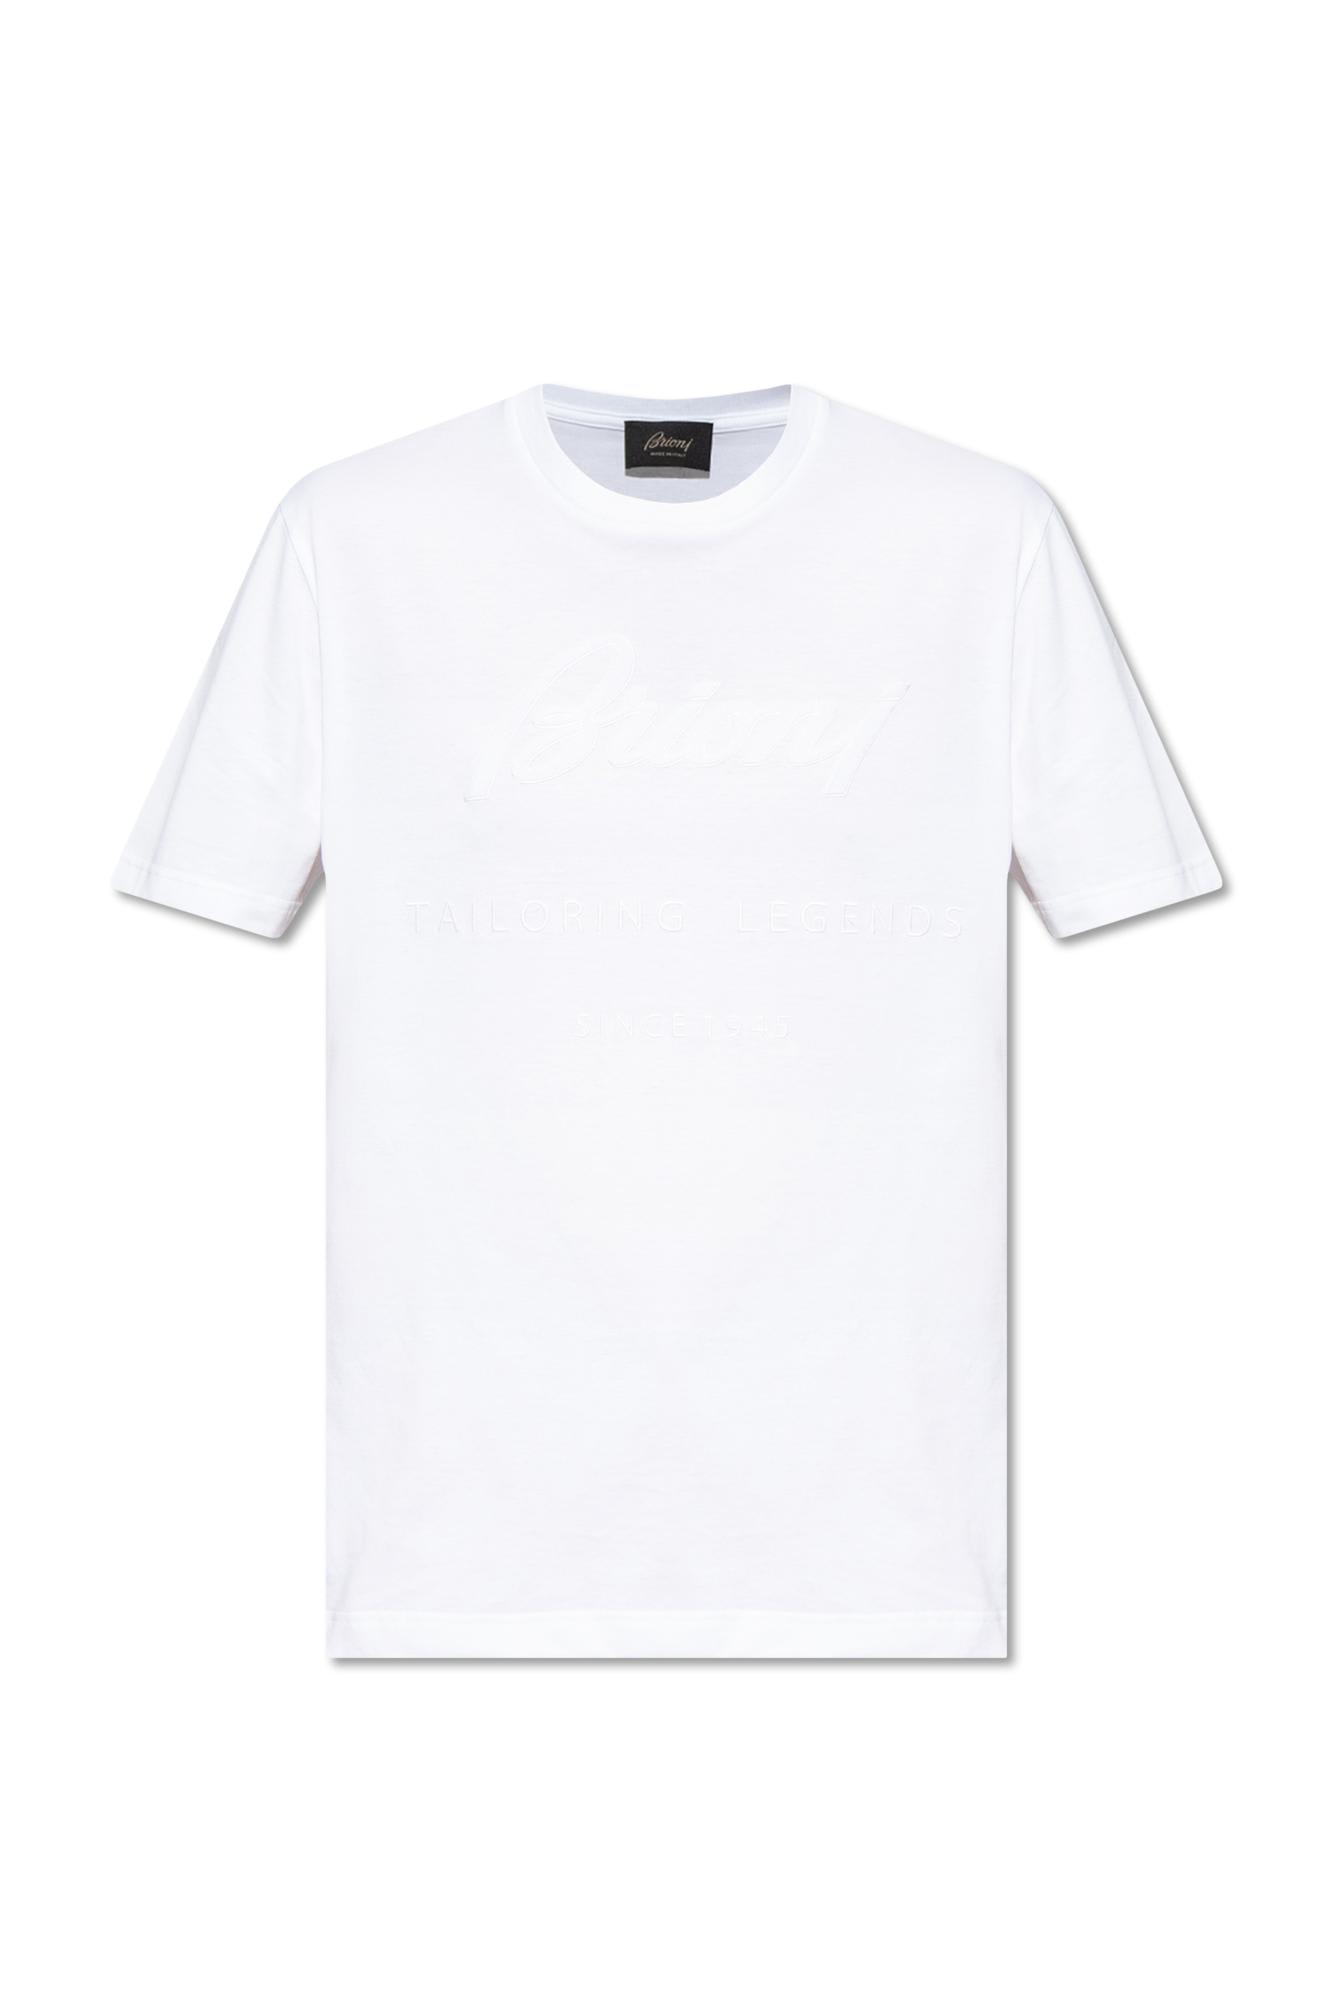 Brioni X Brad Pitt Hidden-placket Tuxedo Shirt in White for Men